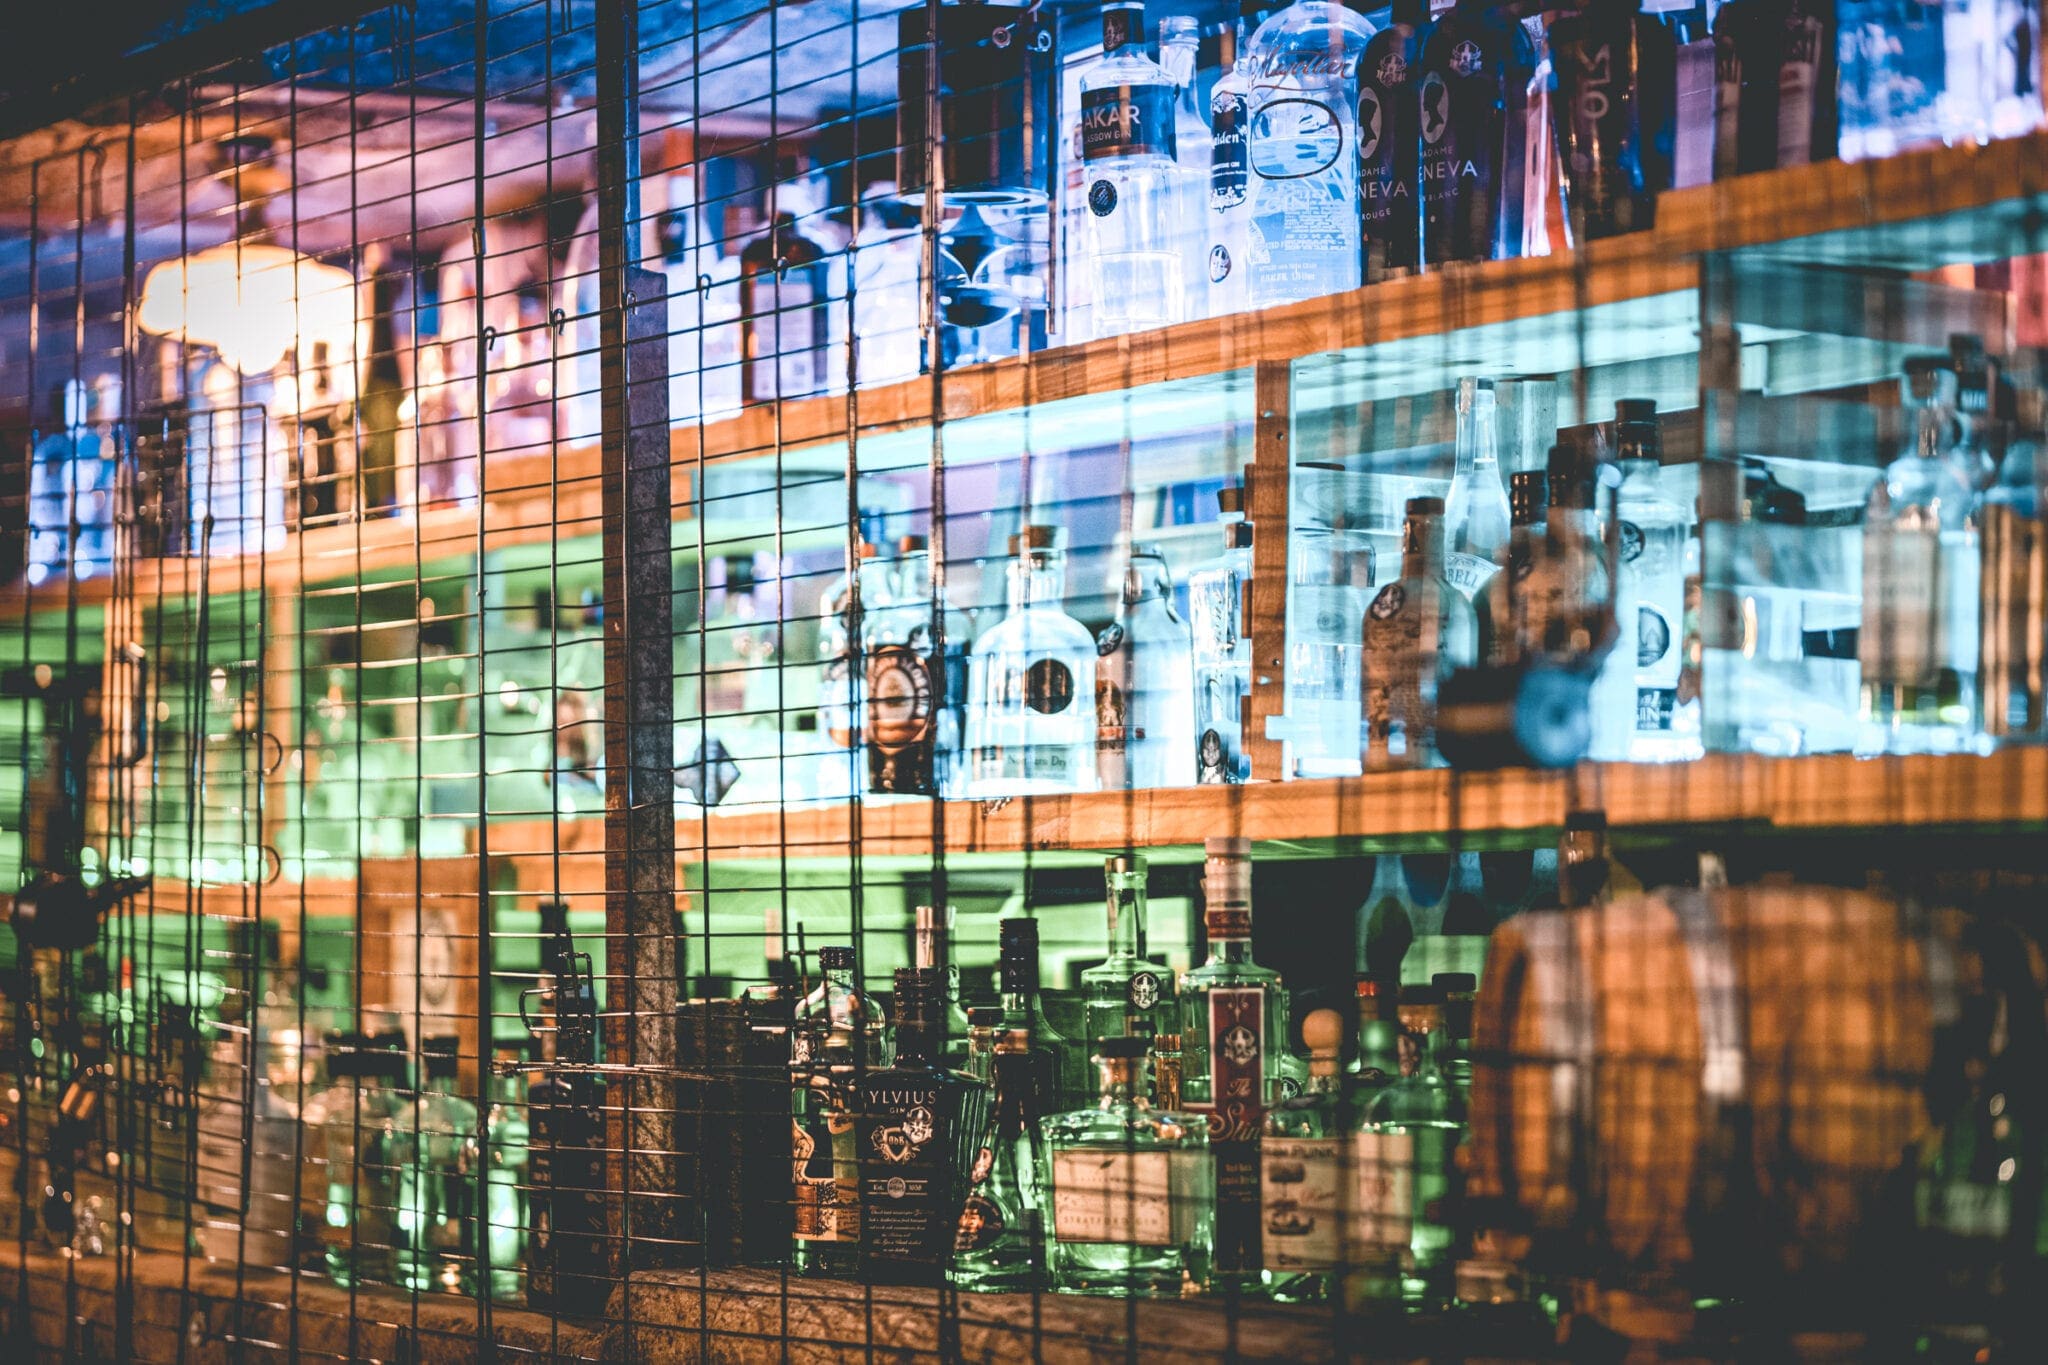 gin bar, Deze gin bar heeft het wereldrecord met de grootste gin collectie ter wereld